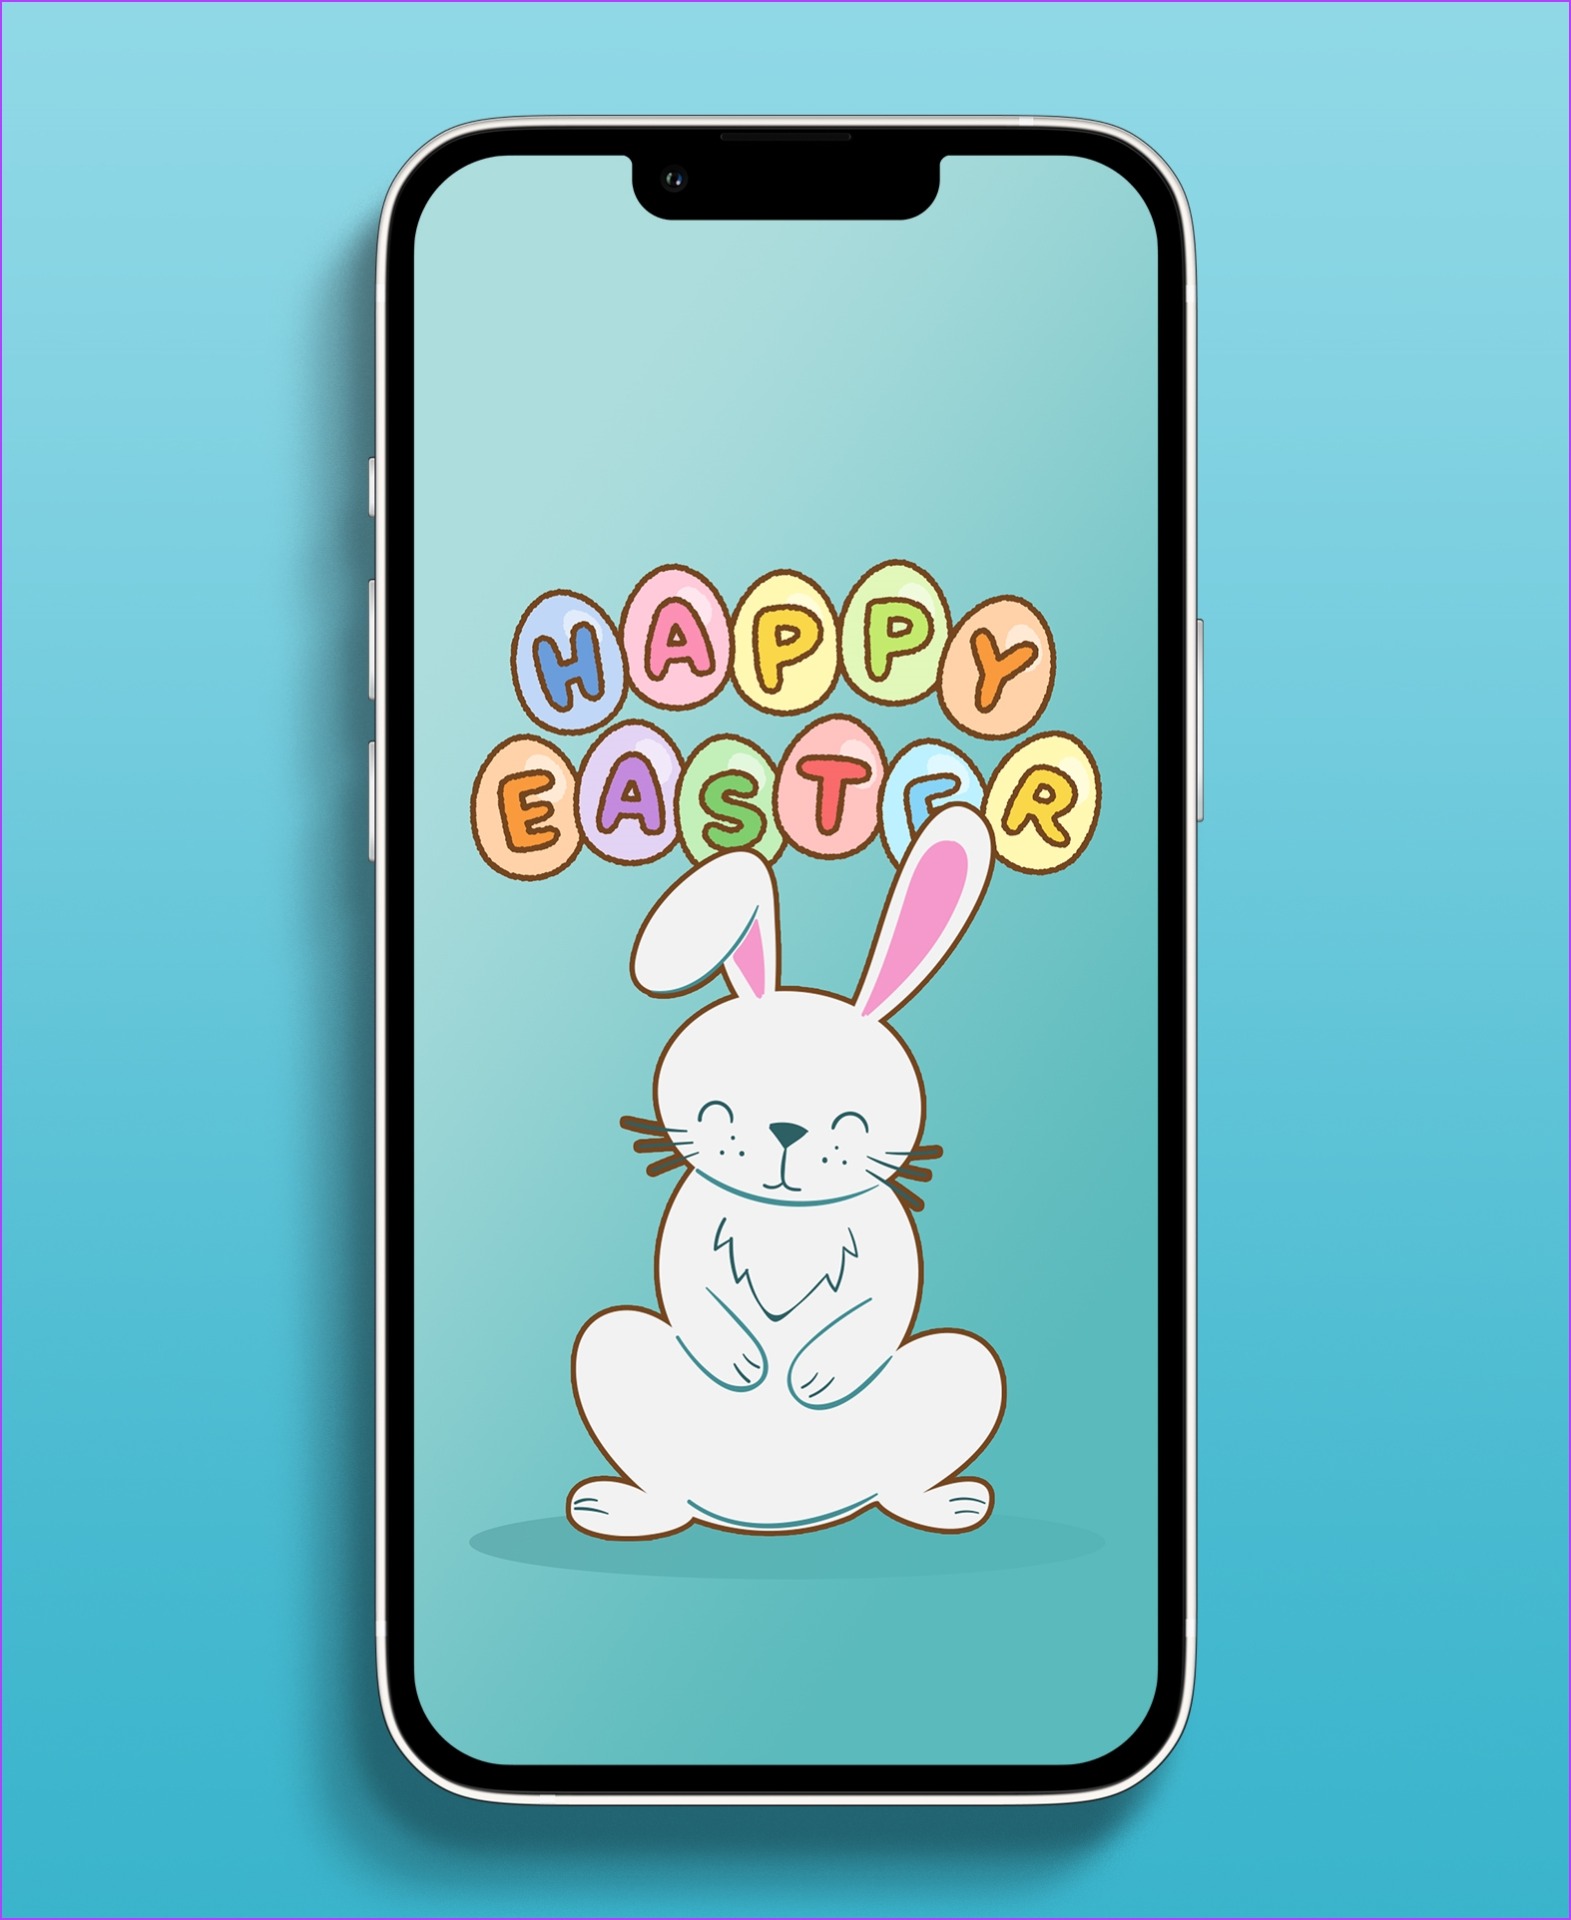 Happy Easter iphone wallpaper  iPhone Wallpaper Design  Facebook